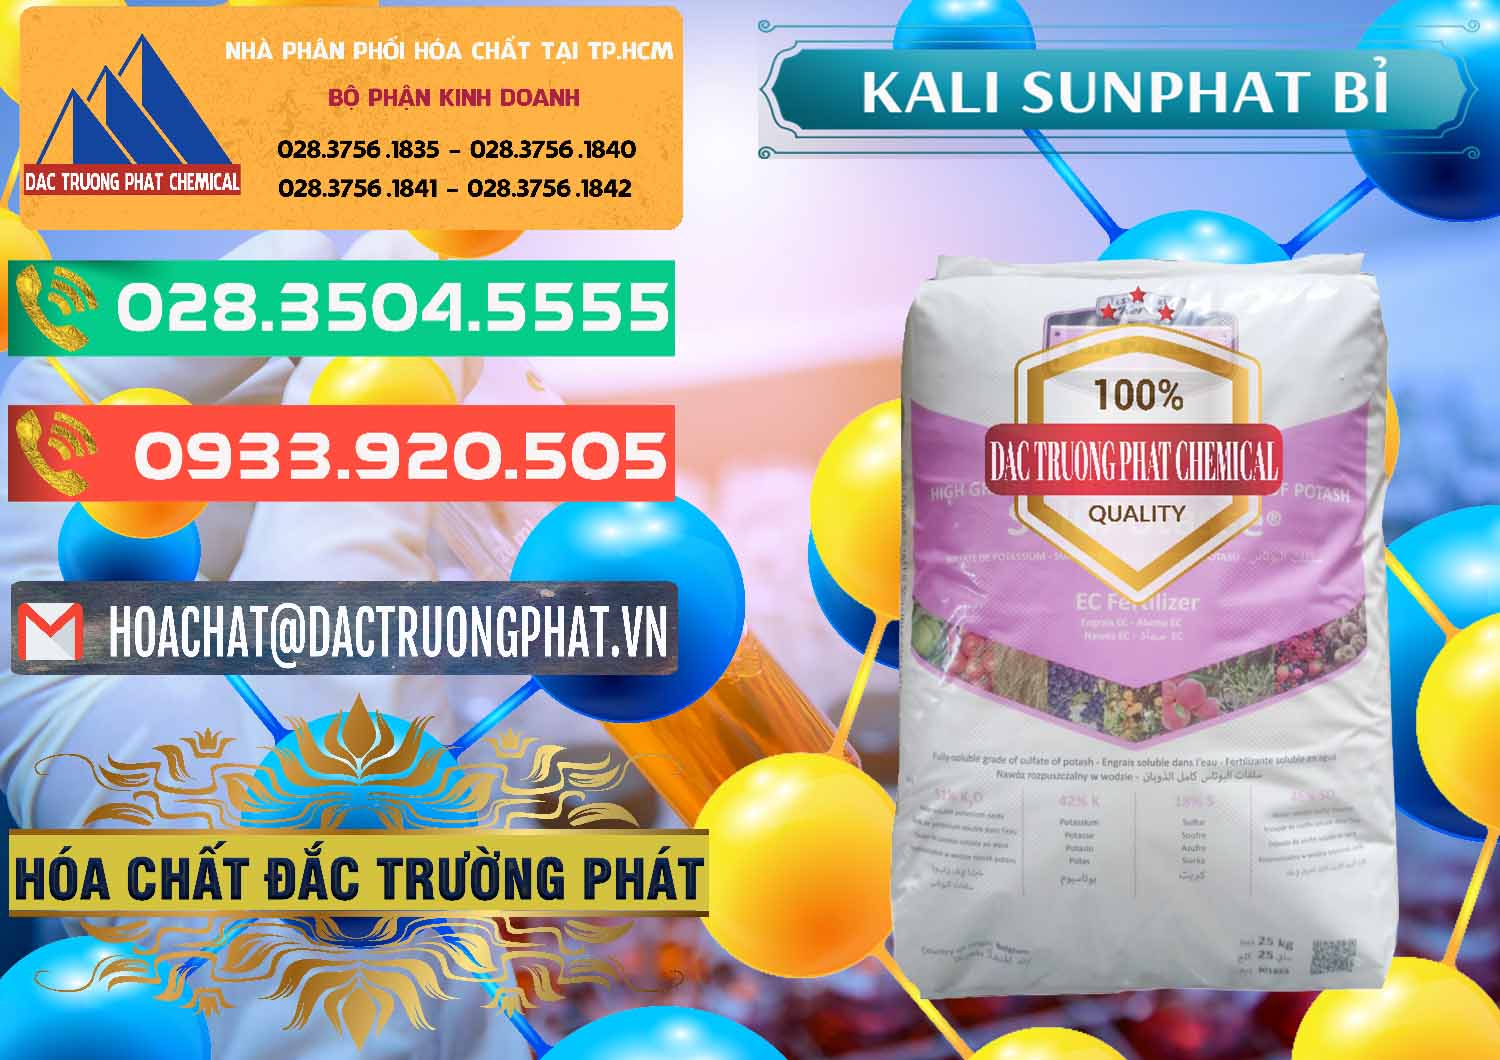 Nơi chuyên bán - cung ứng Kali Sunphat – K2SO4 Bỉ Belgium - 0406 - Cty phân phối & bán hóa chất tại TP.HCM - congtyhoachat.com.vn